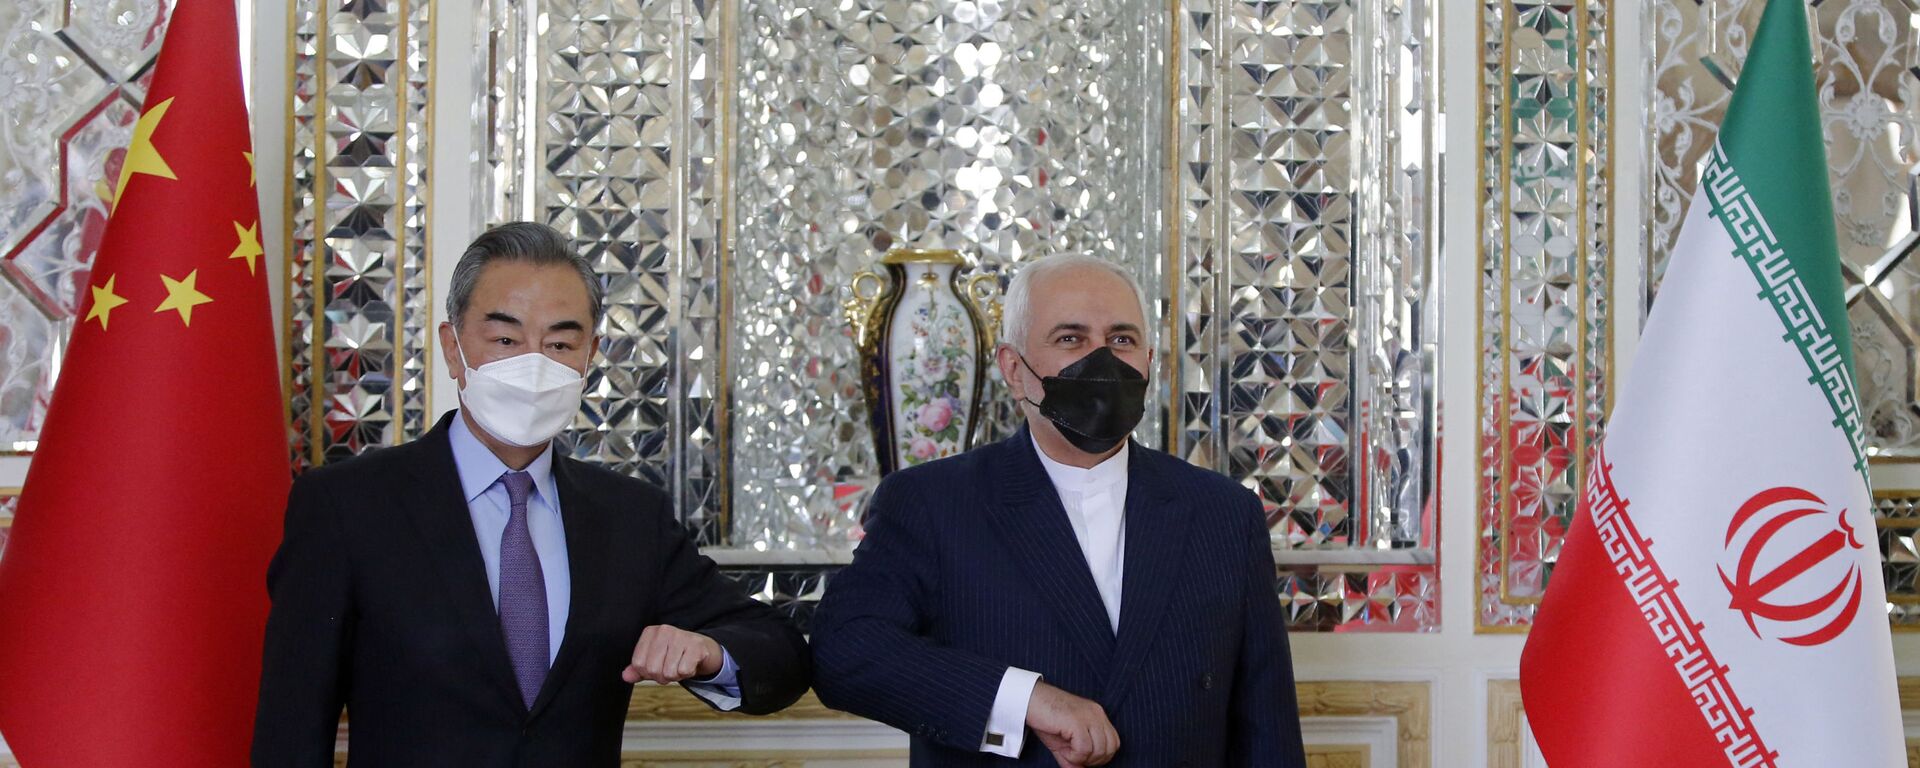  Bộ trưởng Ngoại giao Iran Mohammad Javad Zarif chào mừng người đồng cấp Trung Quốc Vương Nghị đến thăm Tehran, thủ đô Iran. - Sputnik Việt Nam, 1920, 11.11.2021